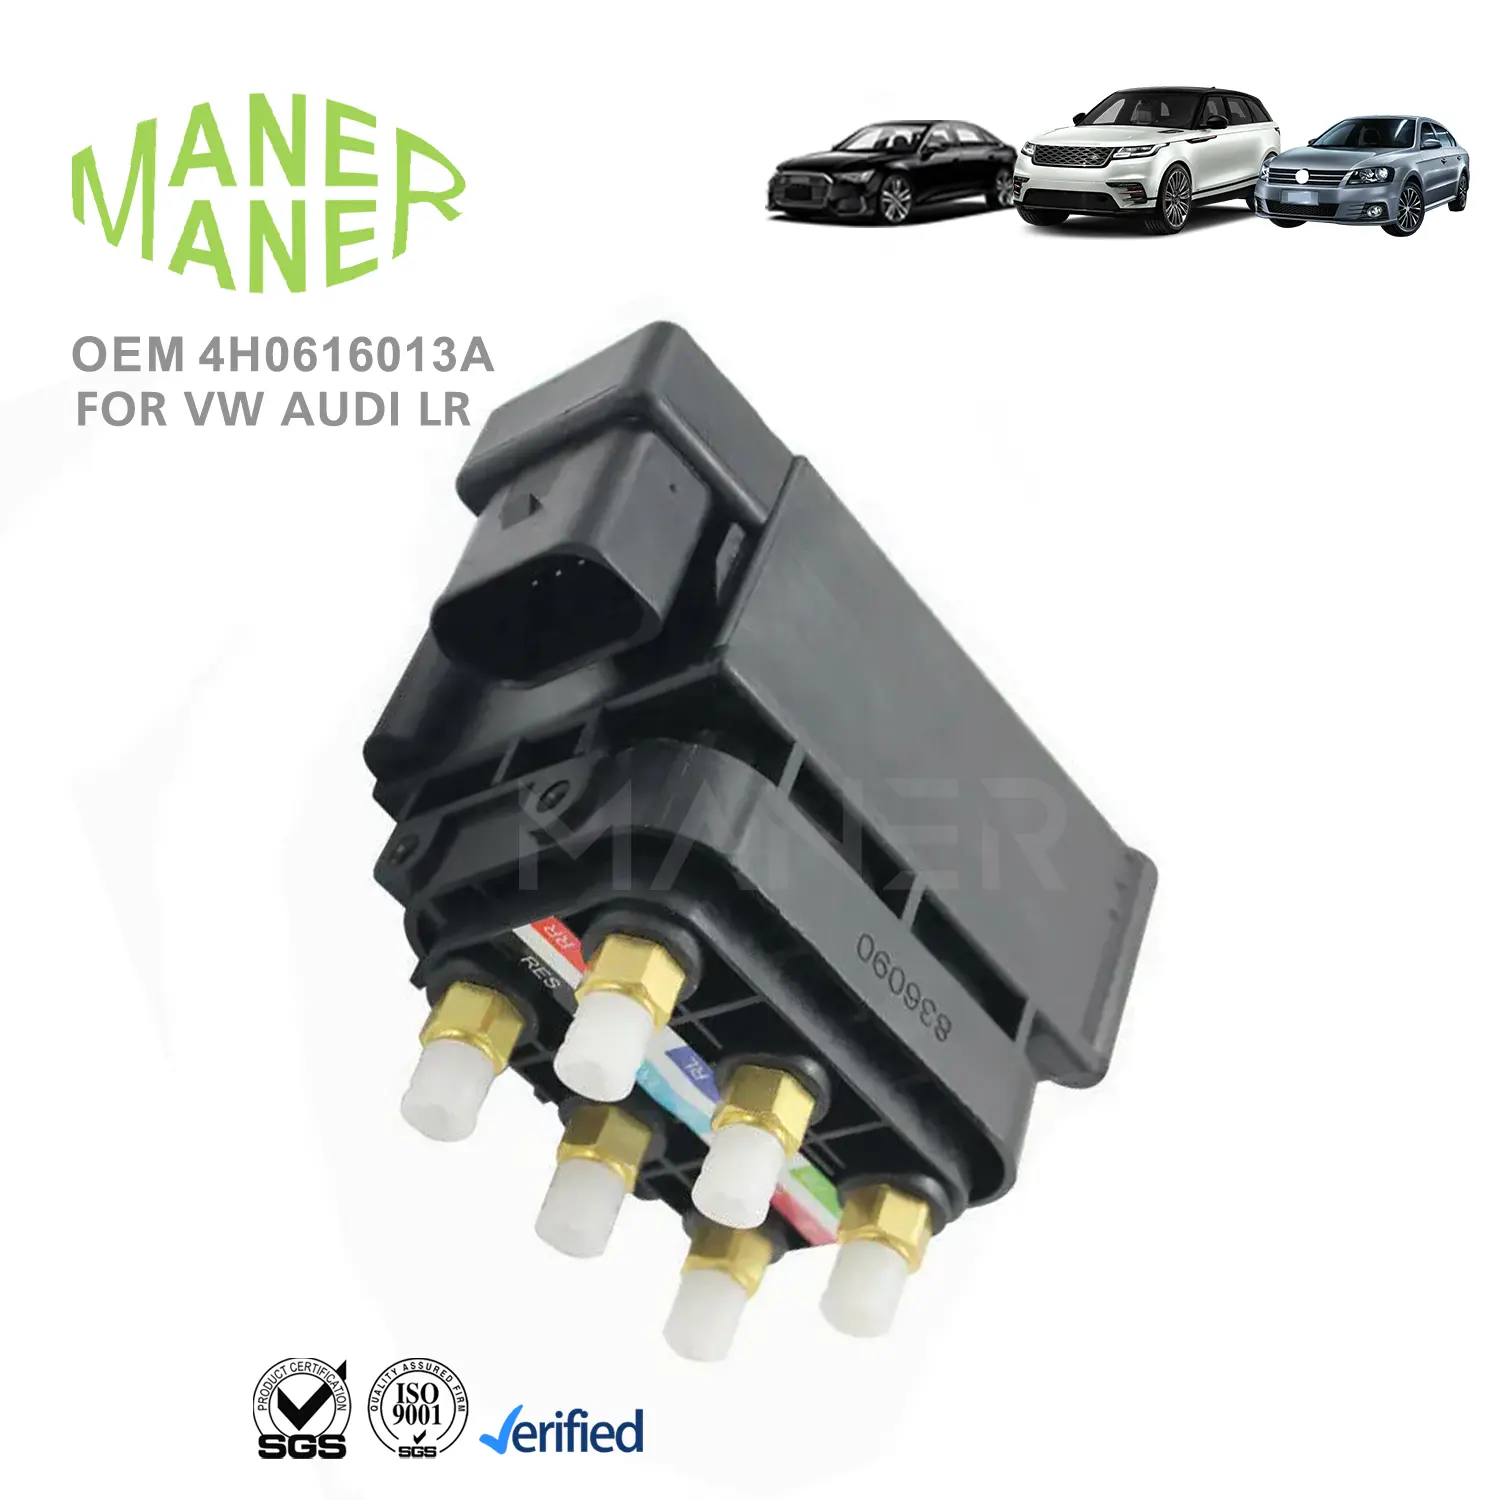 MANER otomatik süspansiyon sistems4h0616013a 4H0616013 4h06160manufacture imalatı VW AUDI için iyi yapılmış parçalar hava kompresör pompası